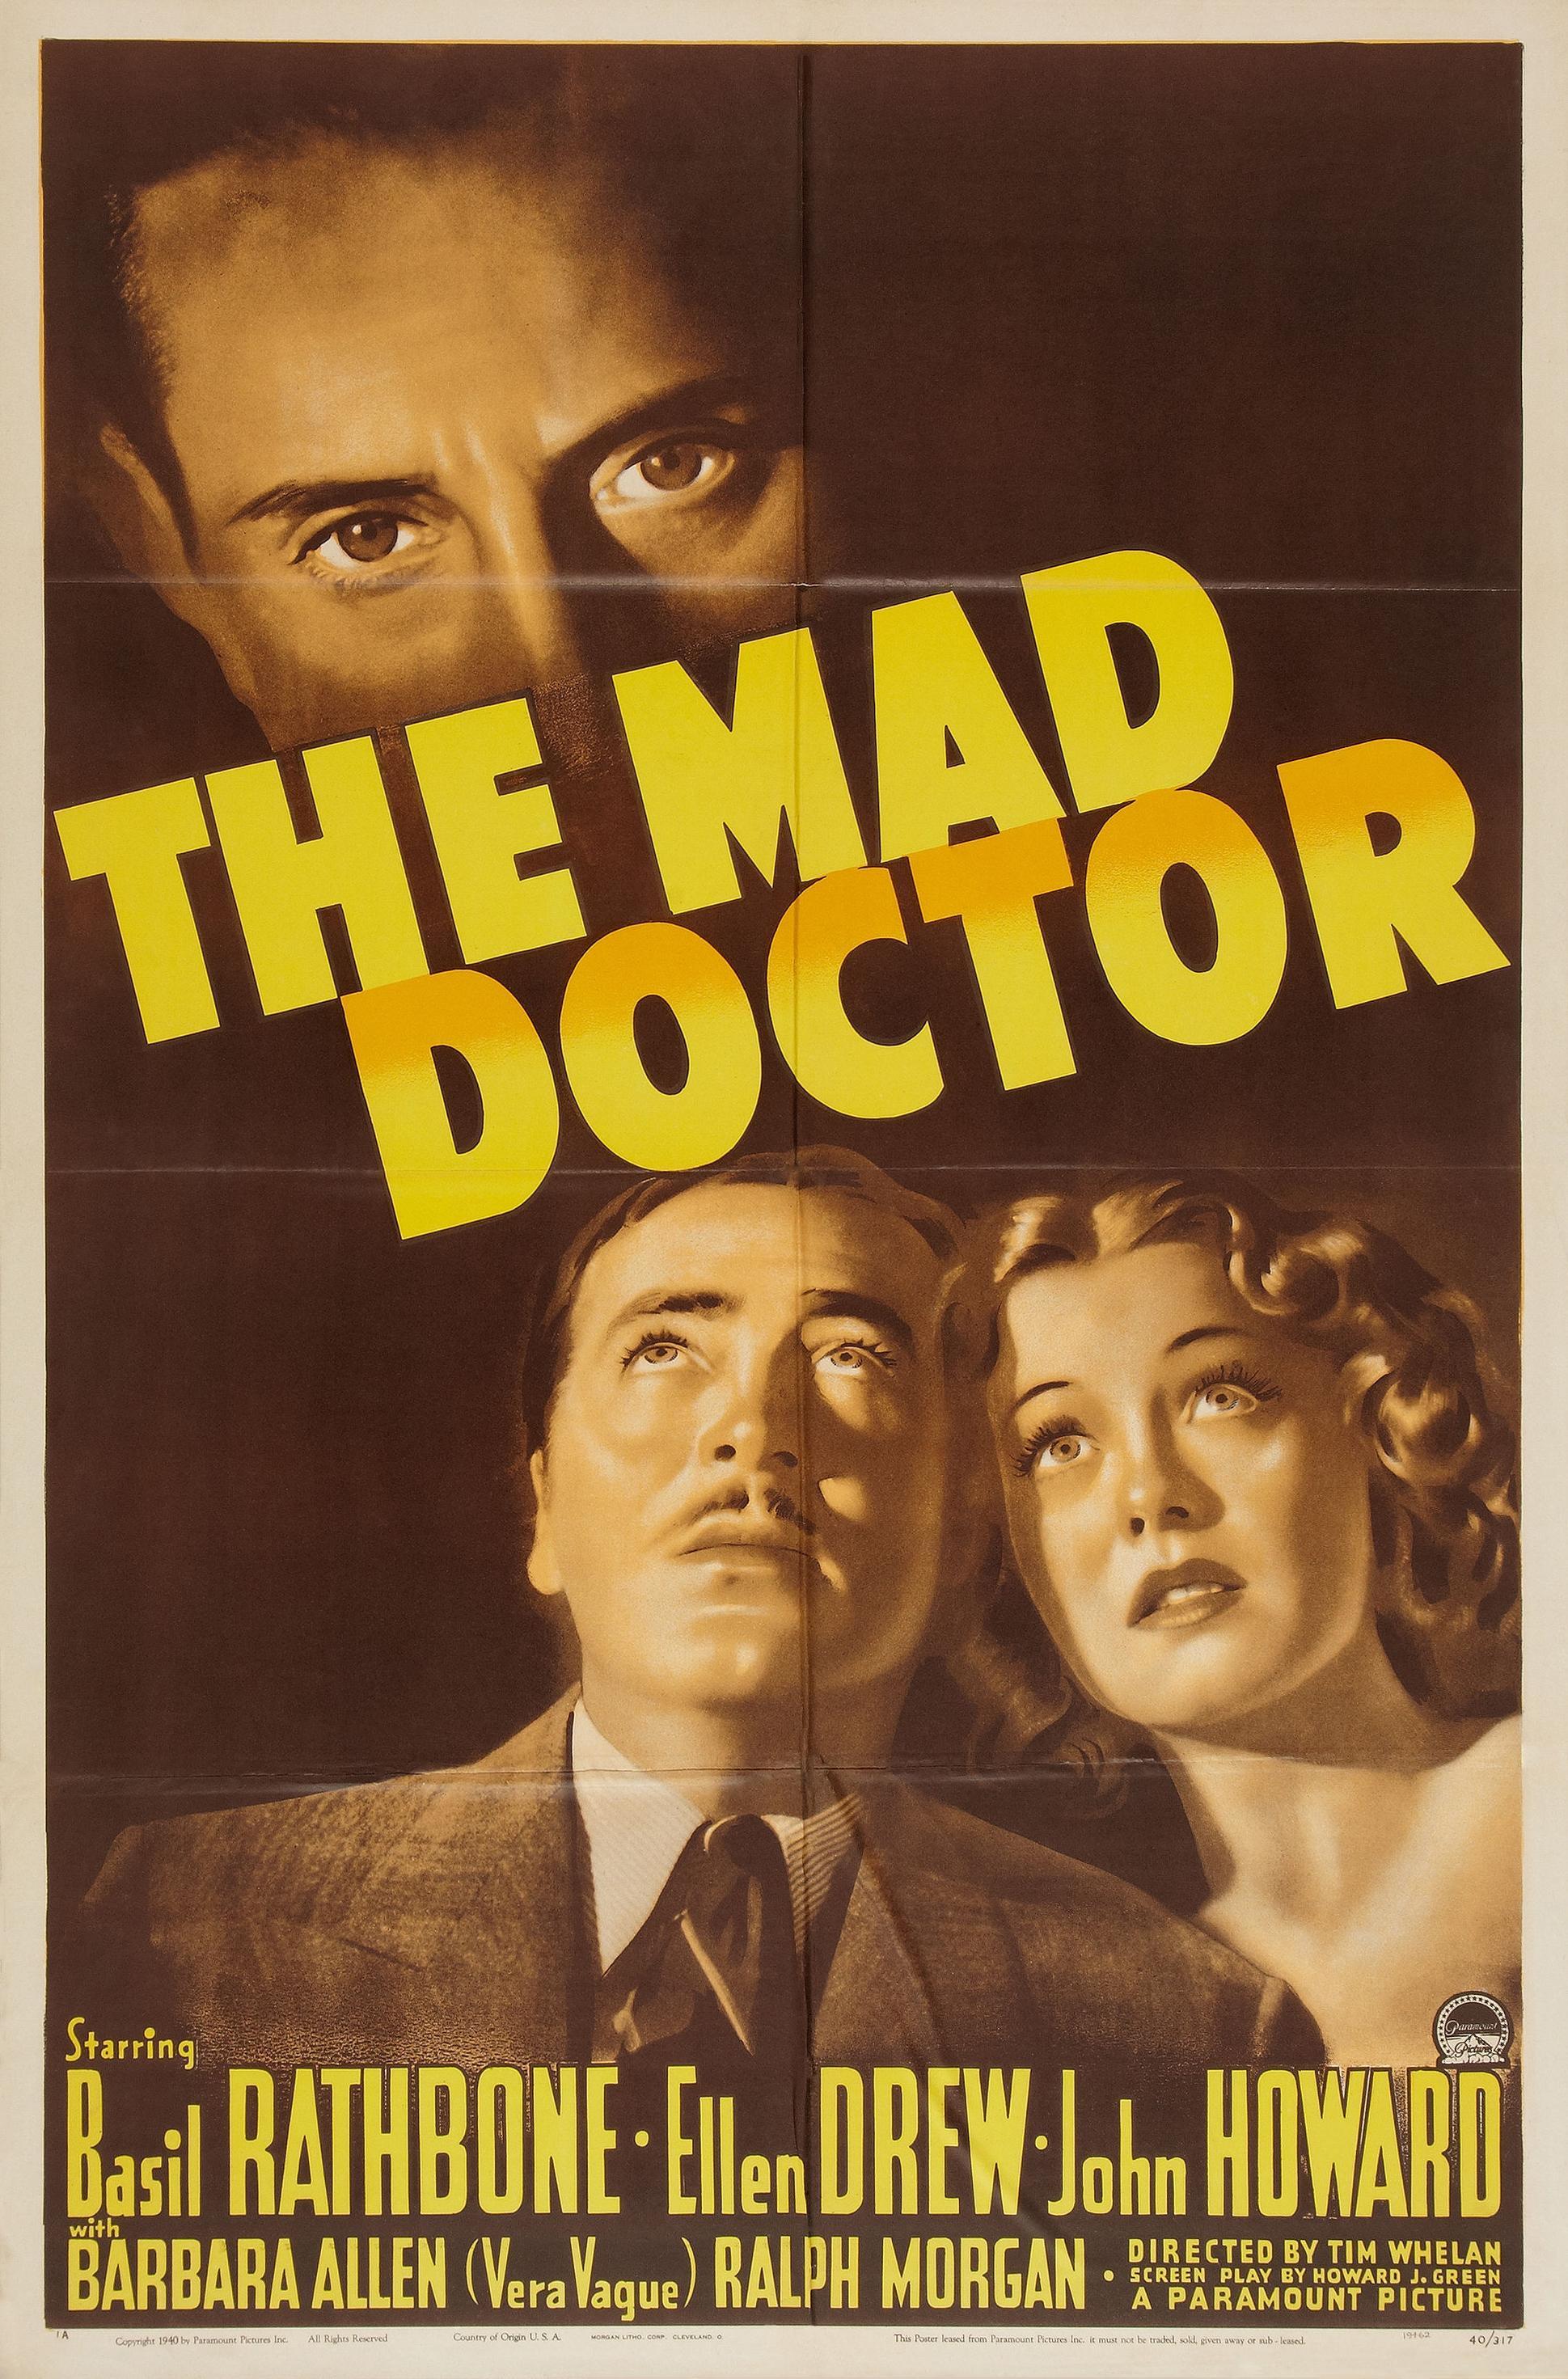 Постер фильма Mad Doctor